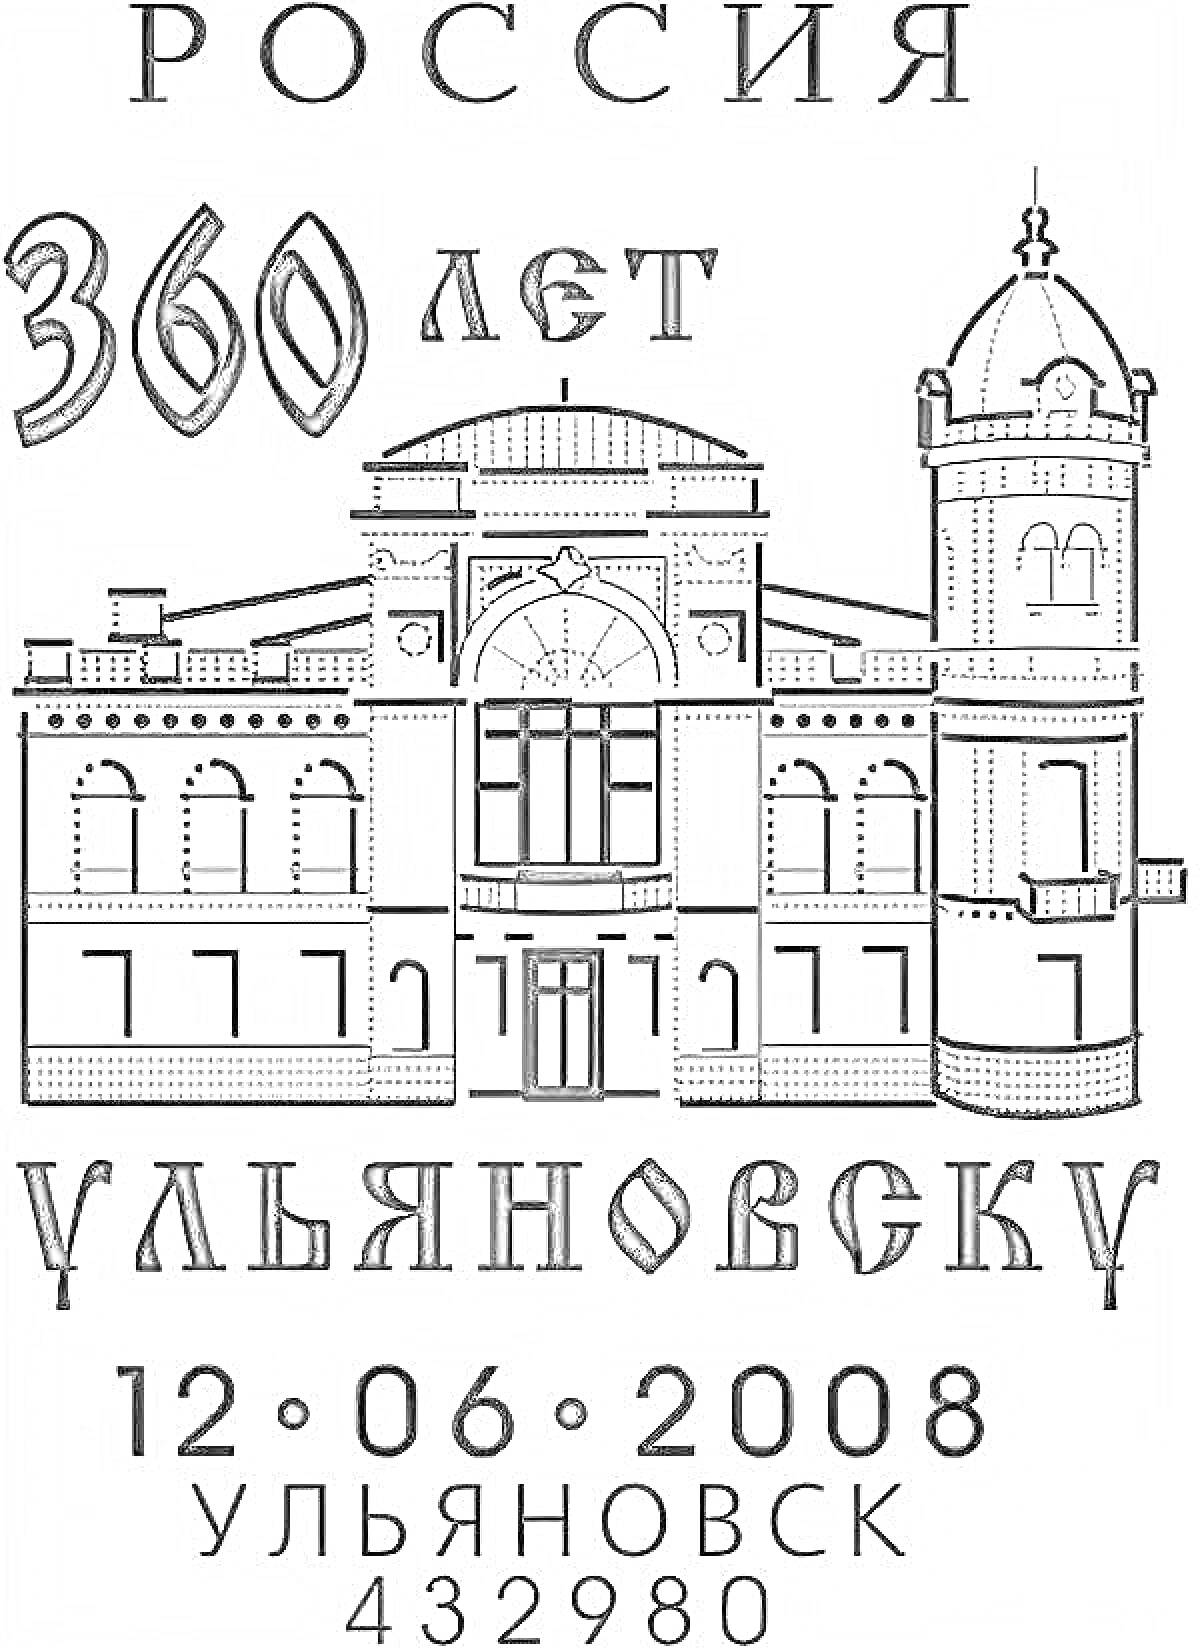 Россия 360 лет, Ульяновск. На рисунке изображено здание с куполом и башней; над ним текст 